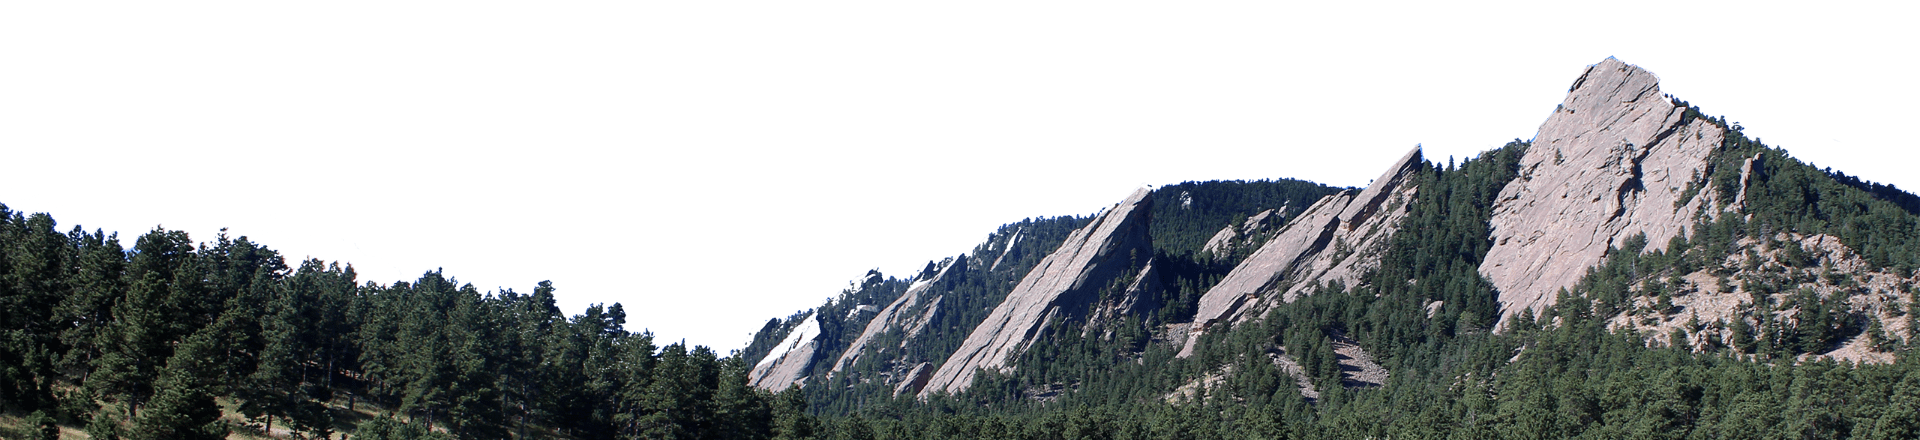 colorado mountains